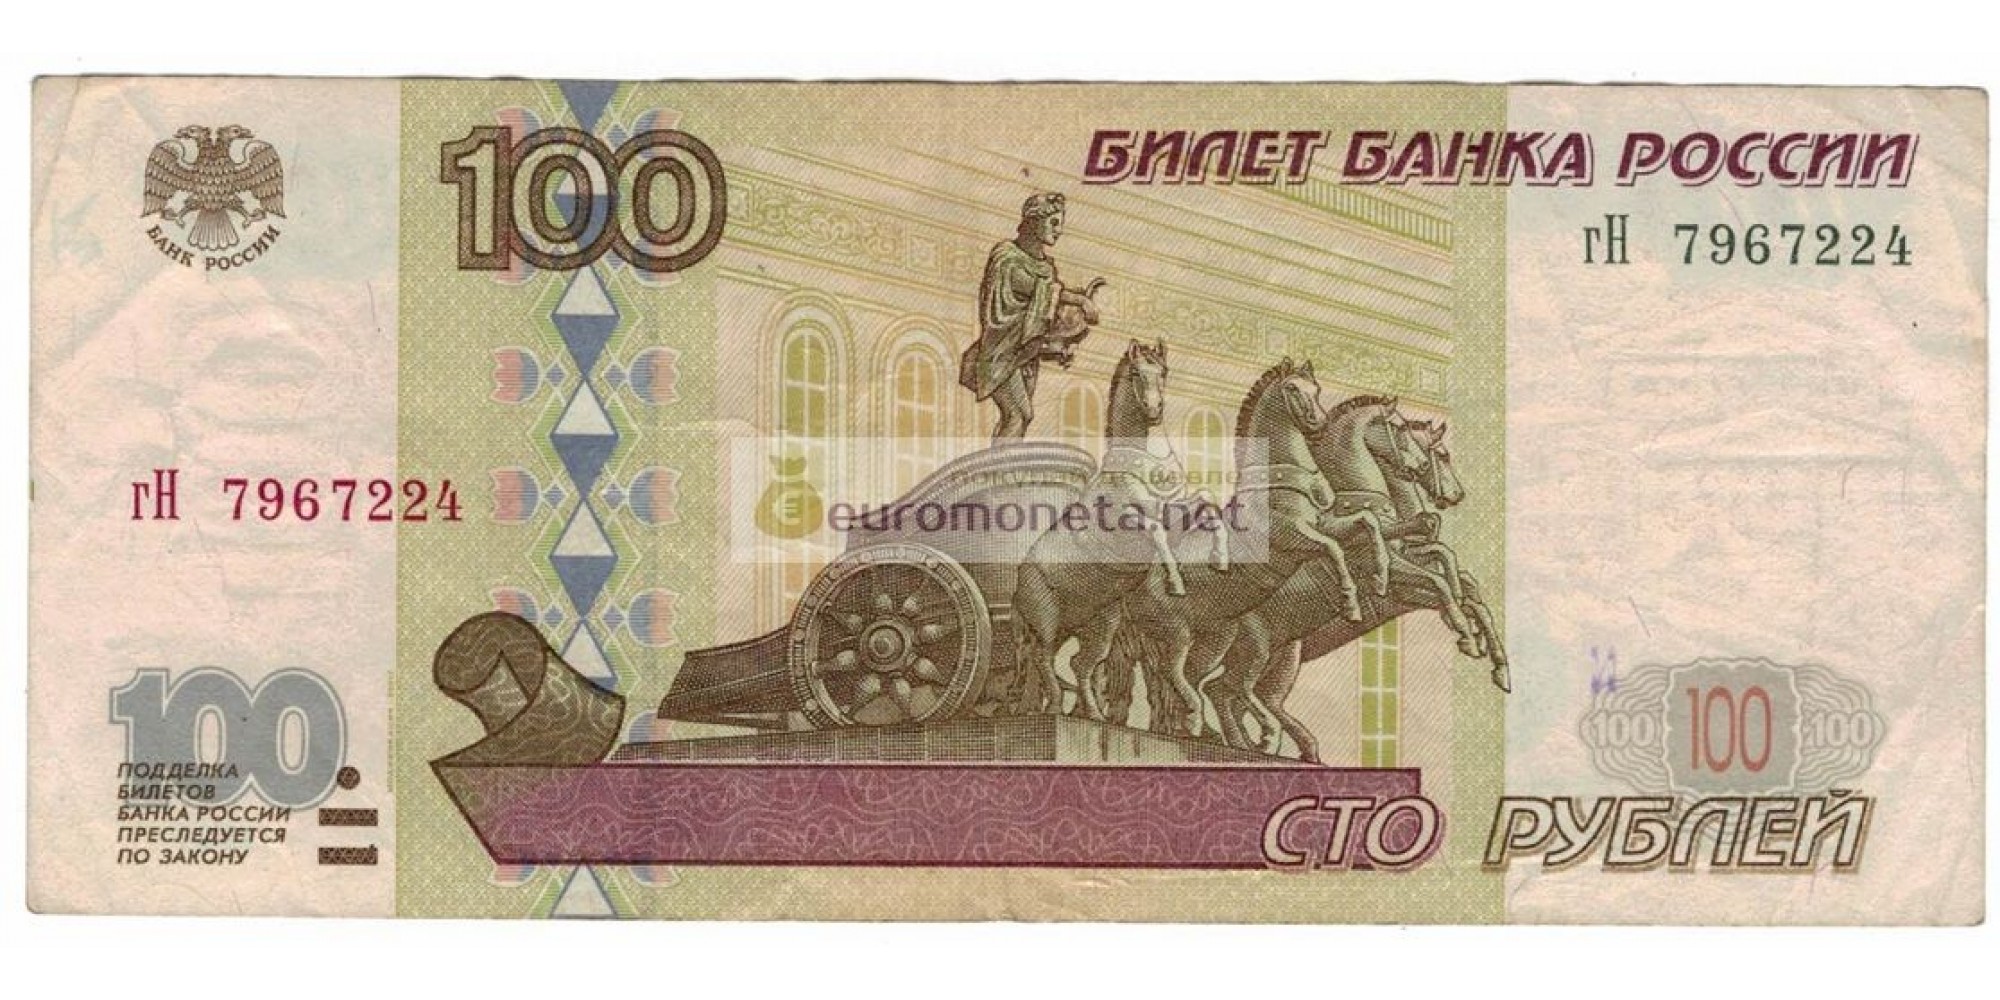 Россия 100 рублей 1997 год модификация 2001 год серия гН 7967224